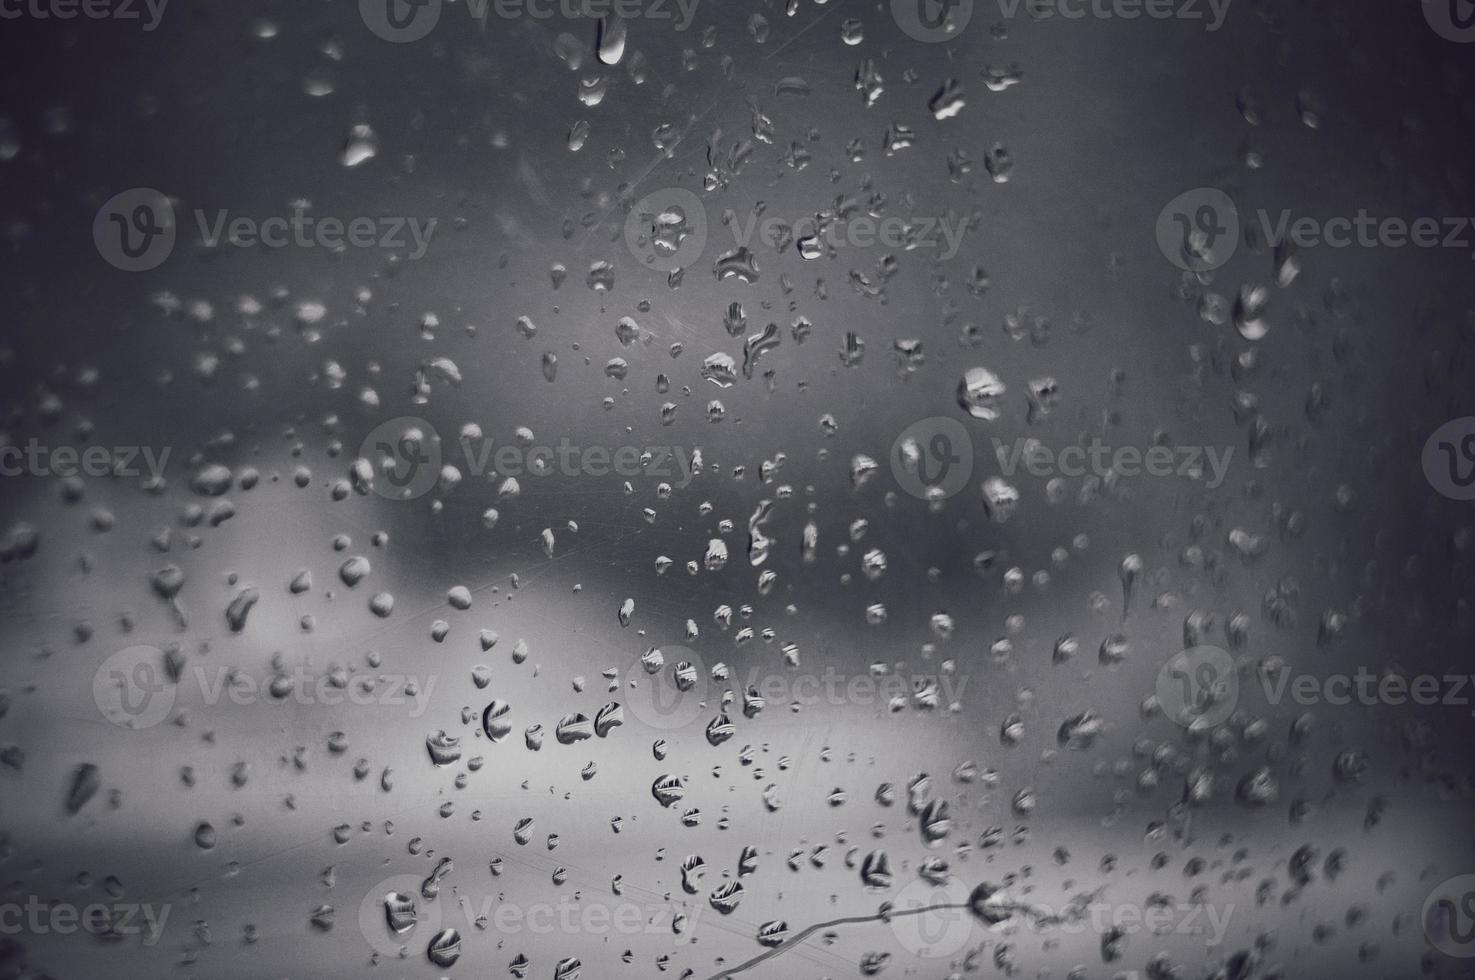 gouttes de pluie sur verre photo